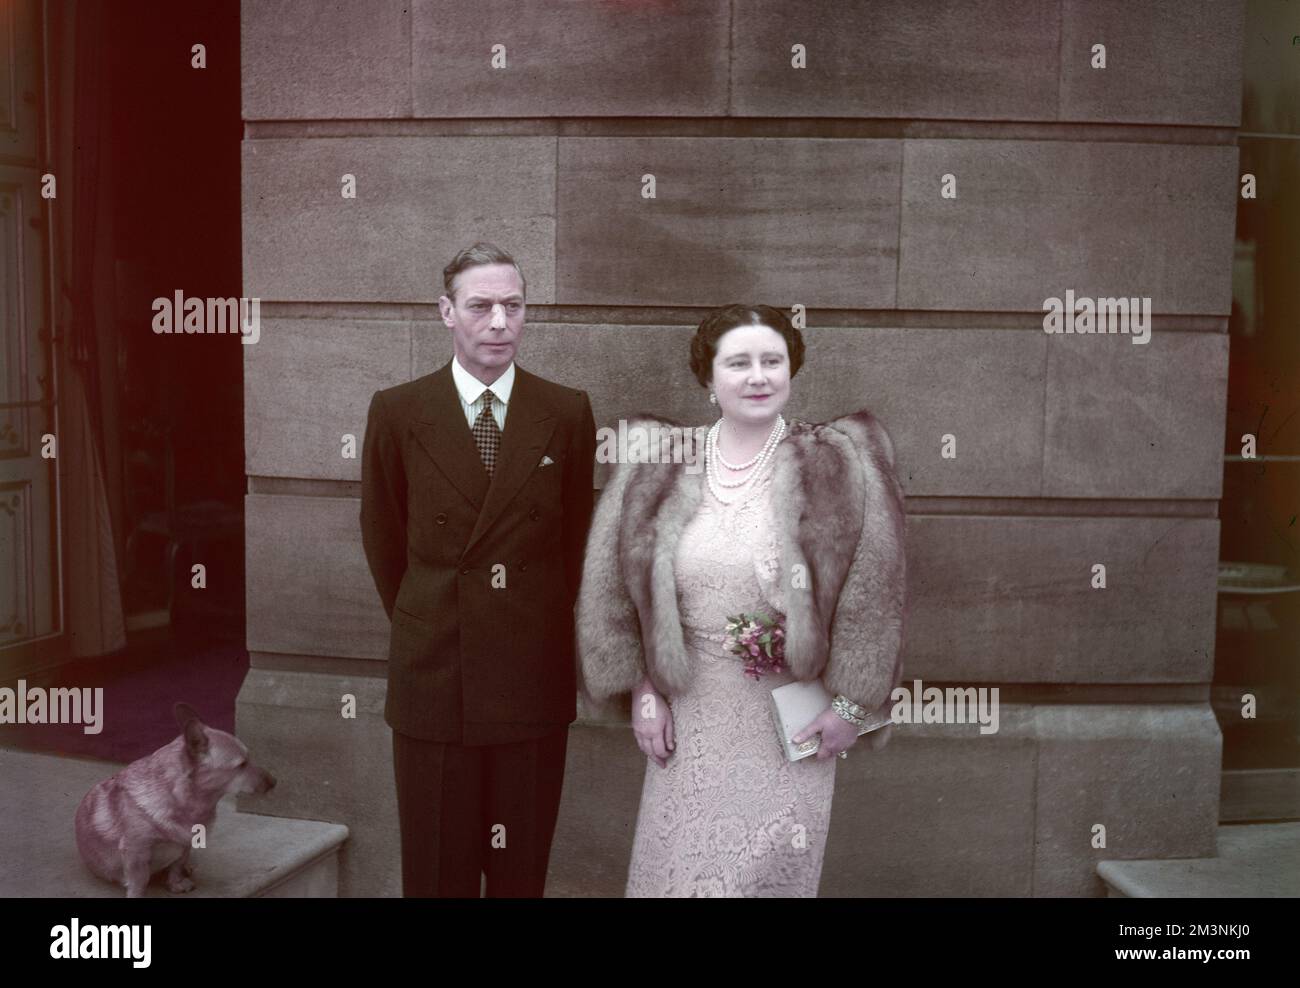 König George VI. (1895 - 1952) mit seiner Frau und Gemahlin Queen Elizabeth vor dem Buckingham Palace zur Zeit ihrer Silberhochzeit 1948. Datum: 1948 Stockfoto